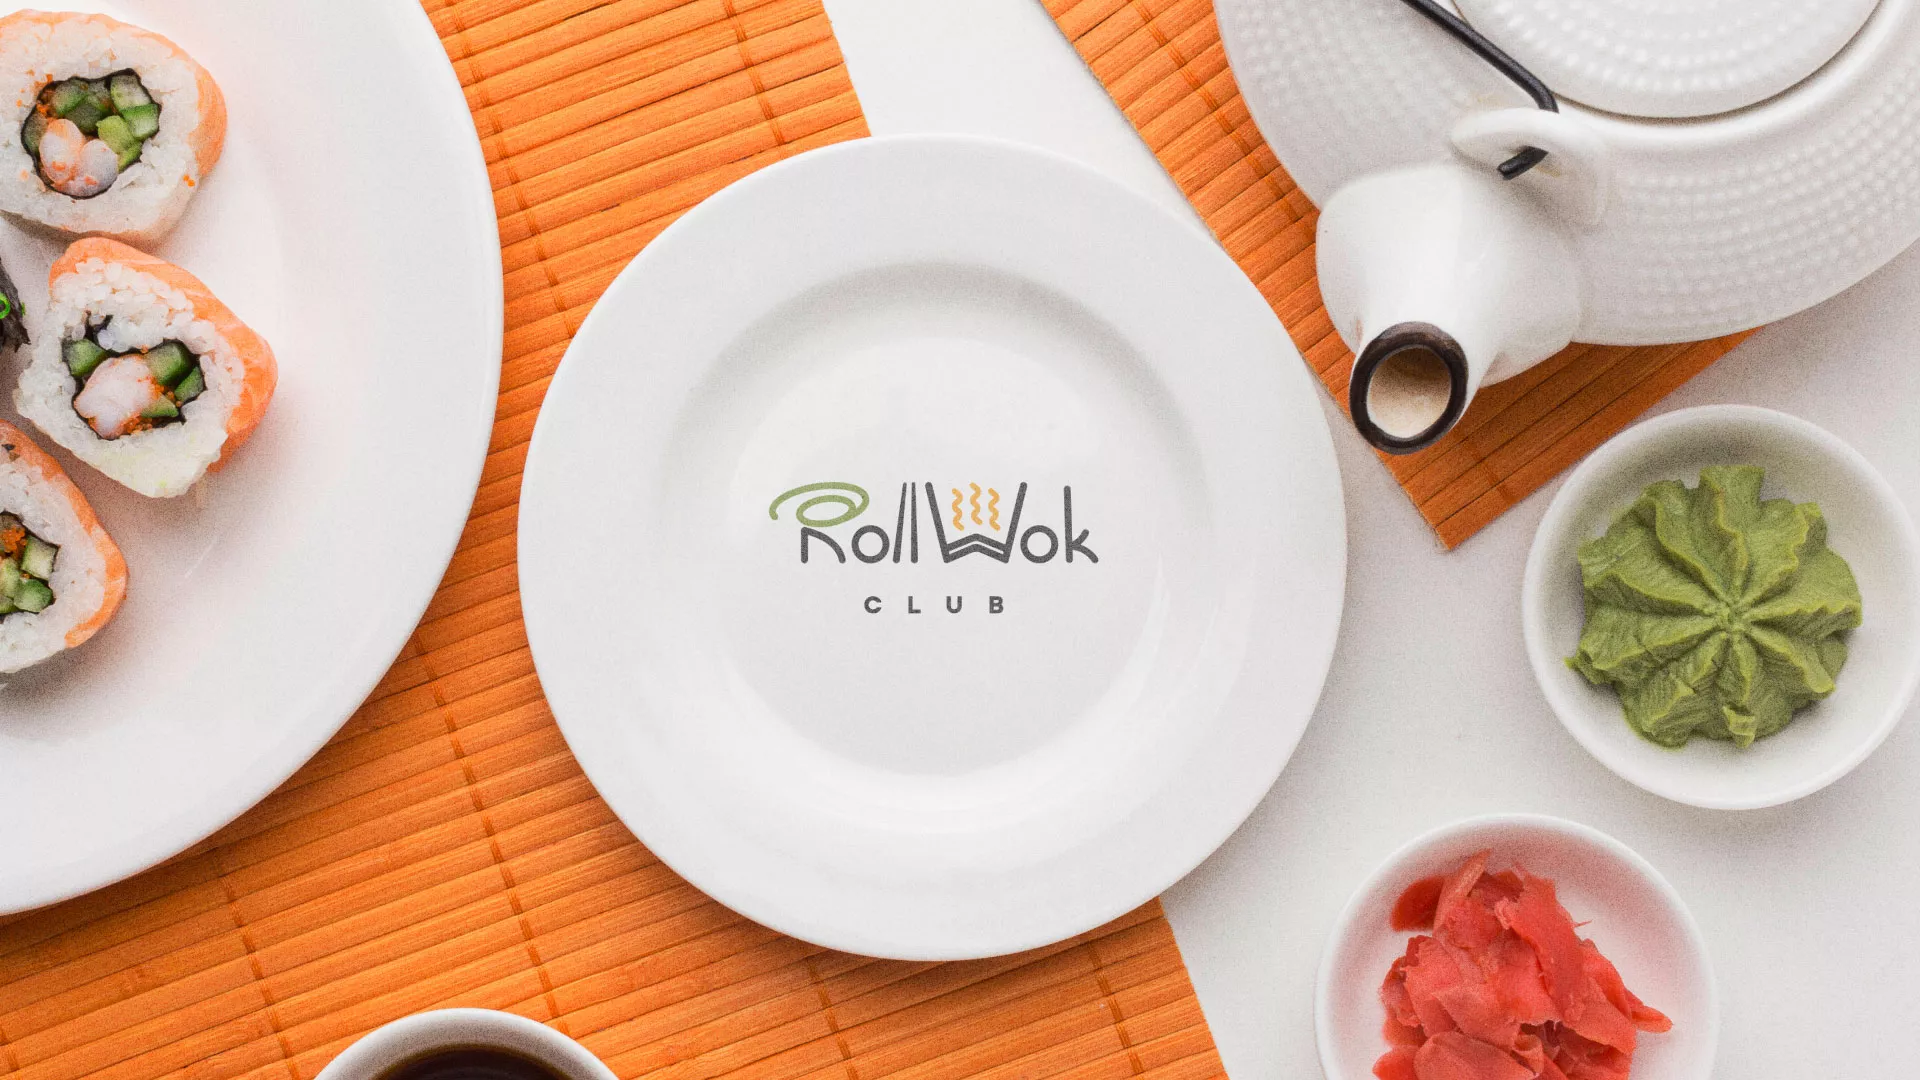 Разработка логотипа и фирменного стиля суши-бара «Roll Wok Club» в Видном